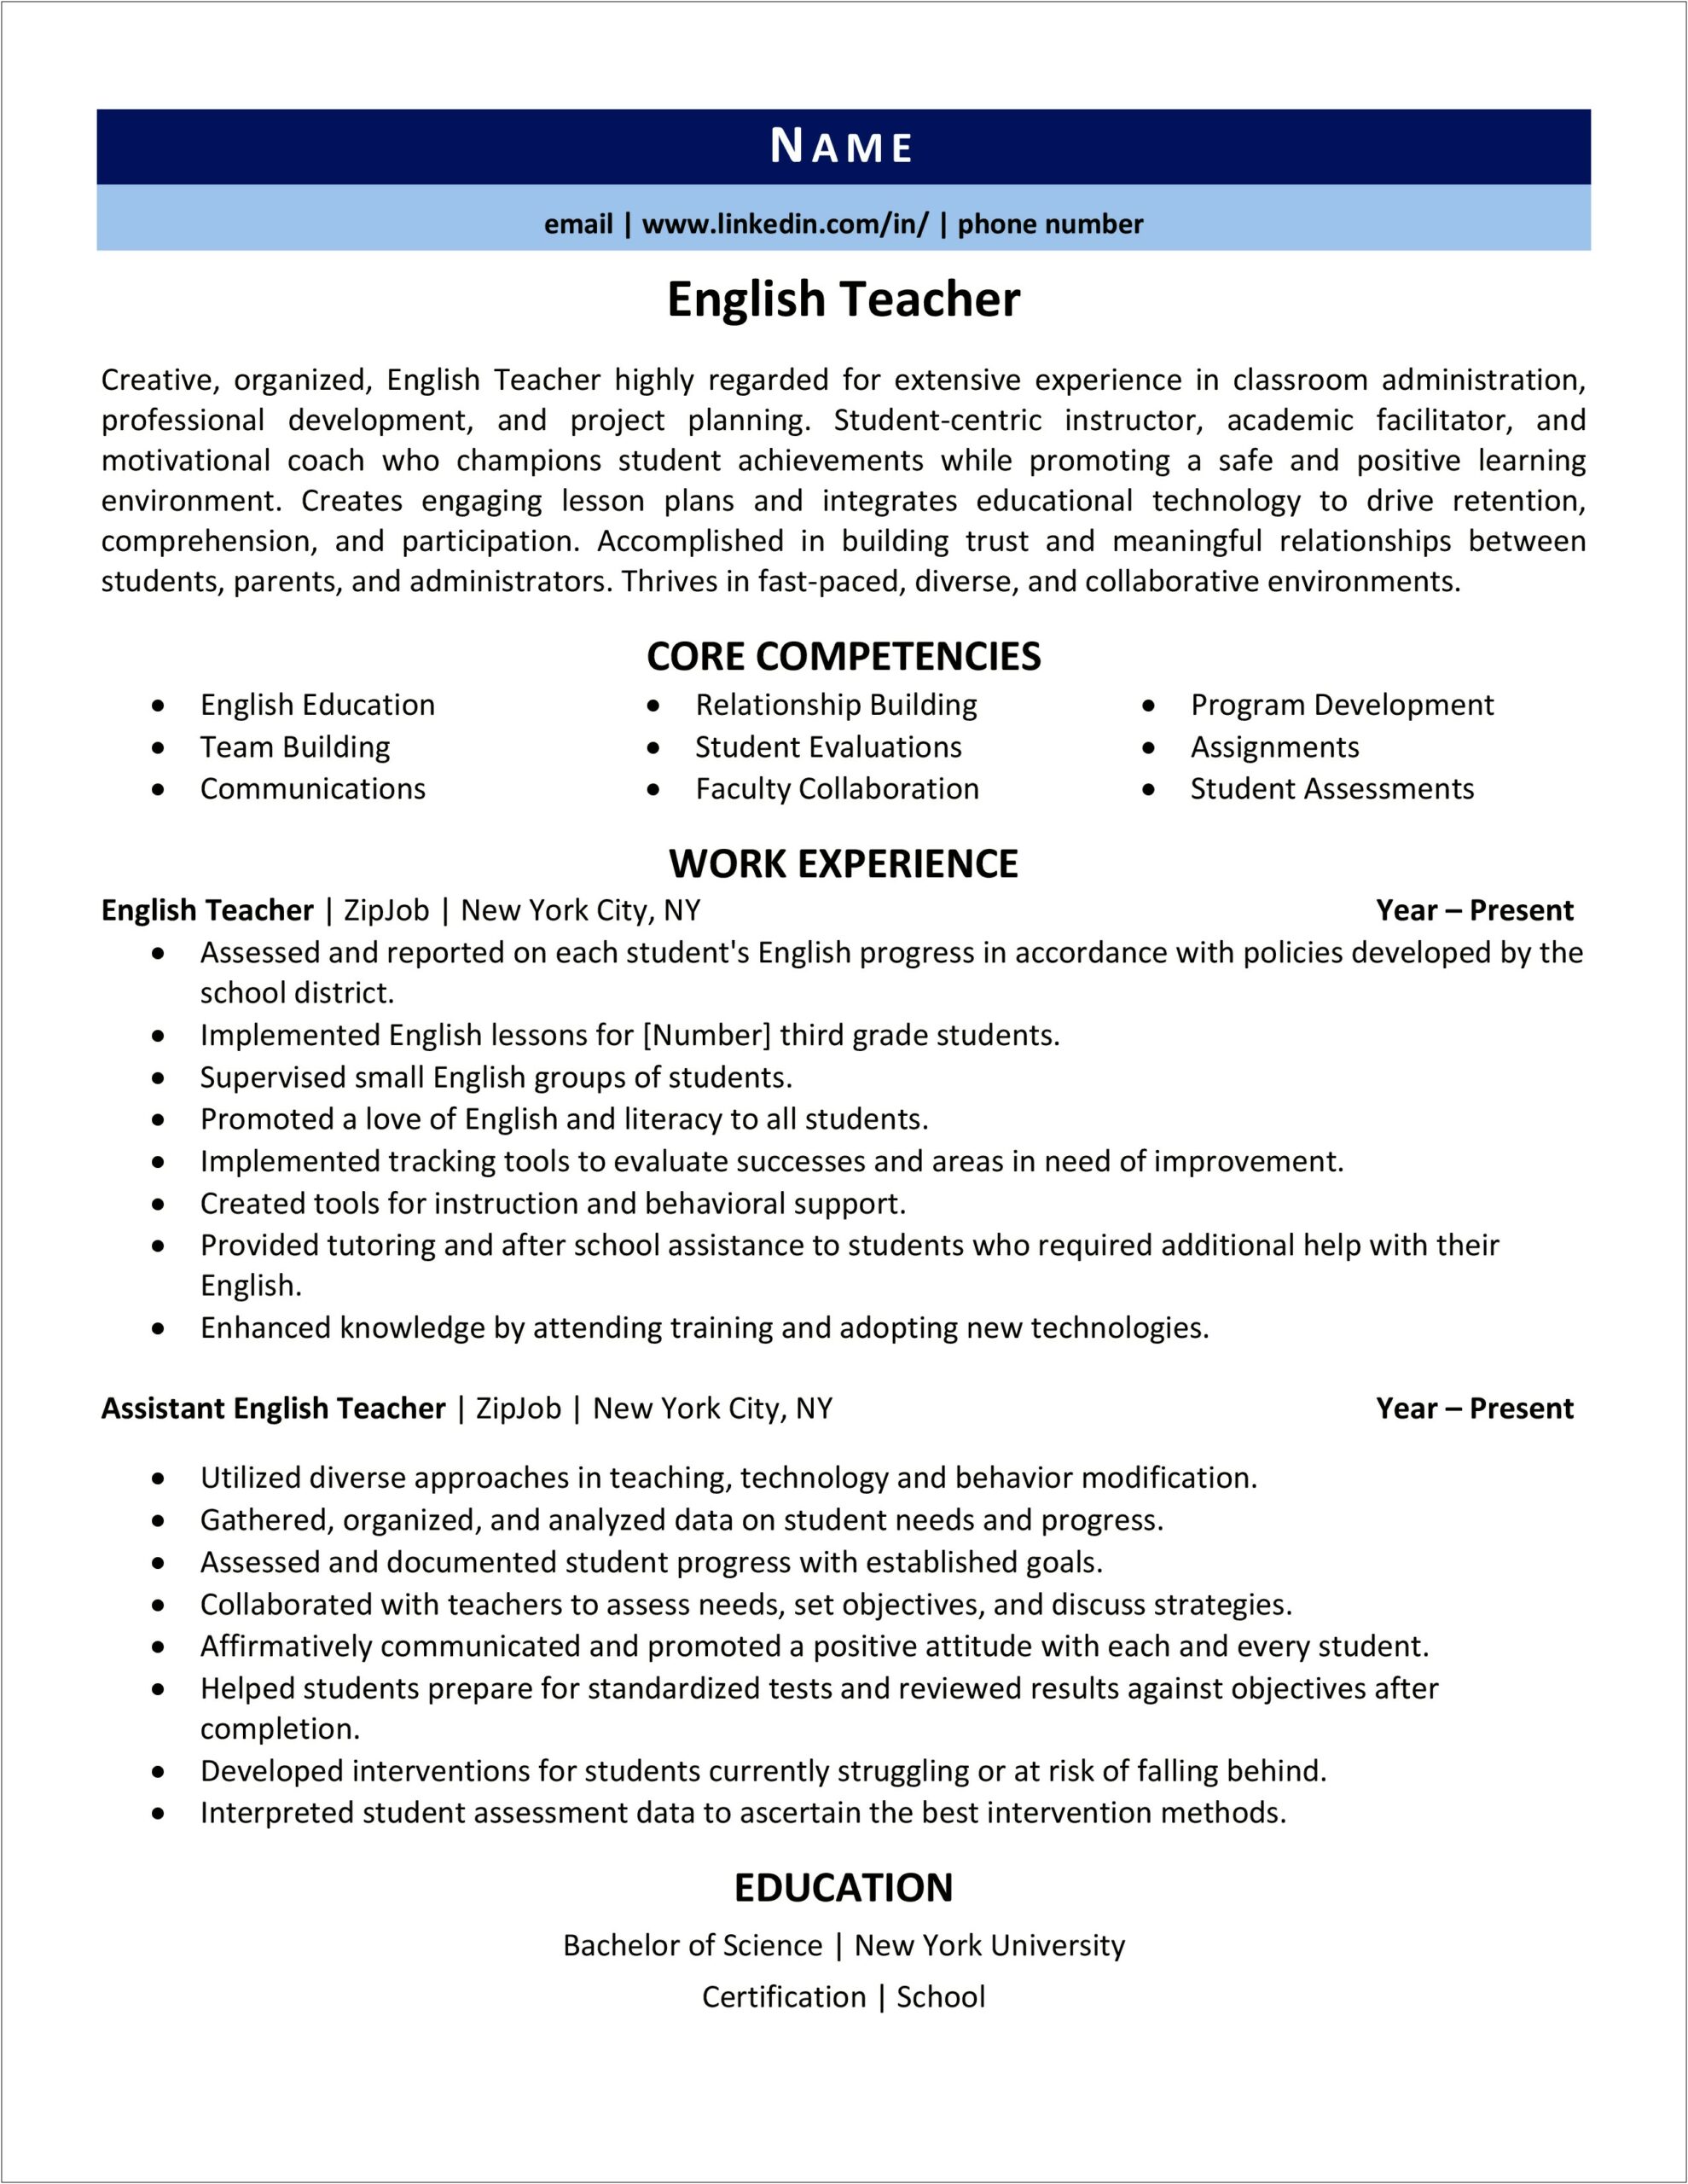 Sample Resume For Online English Teacher